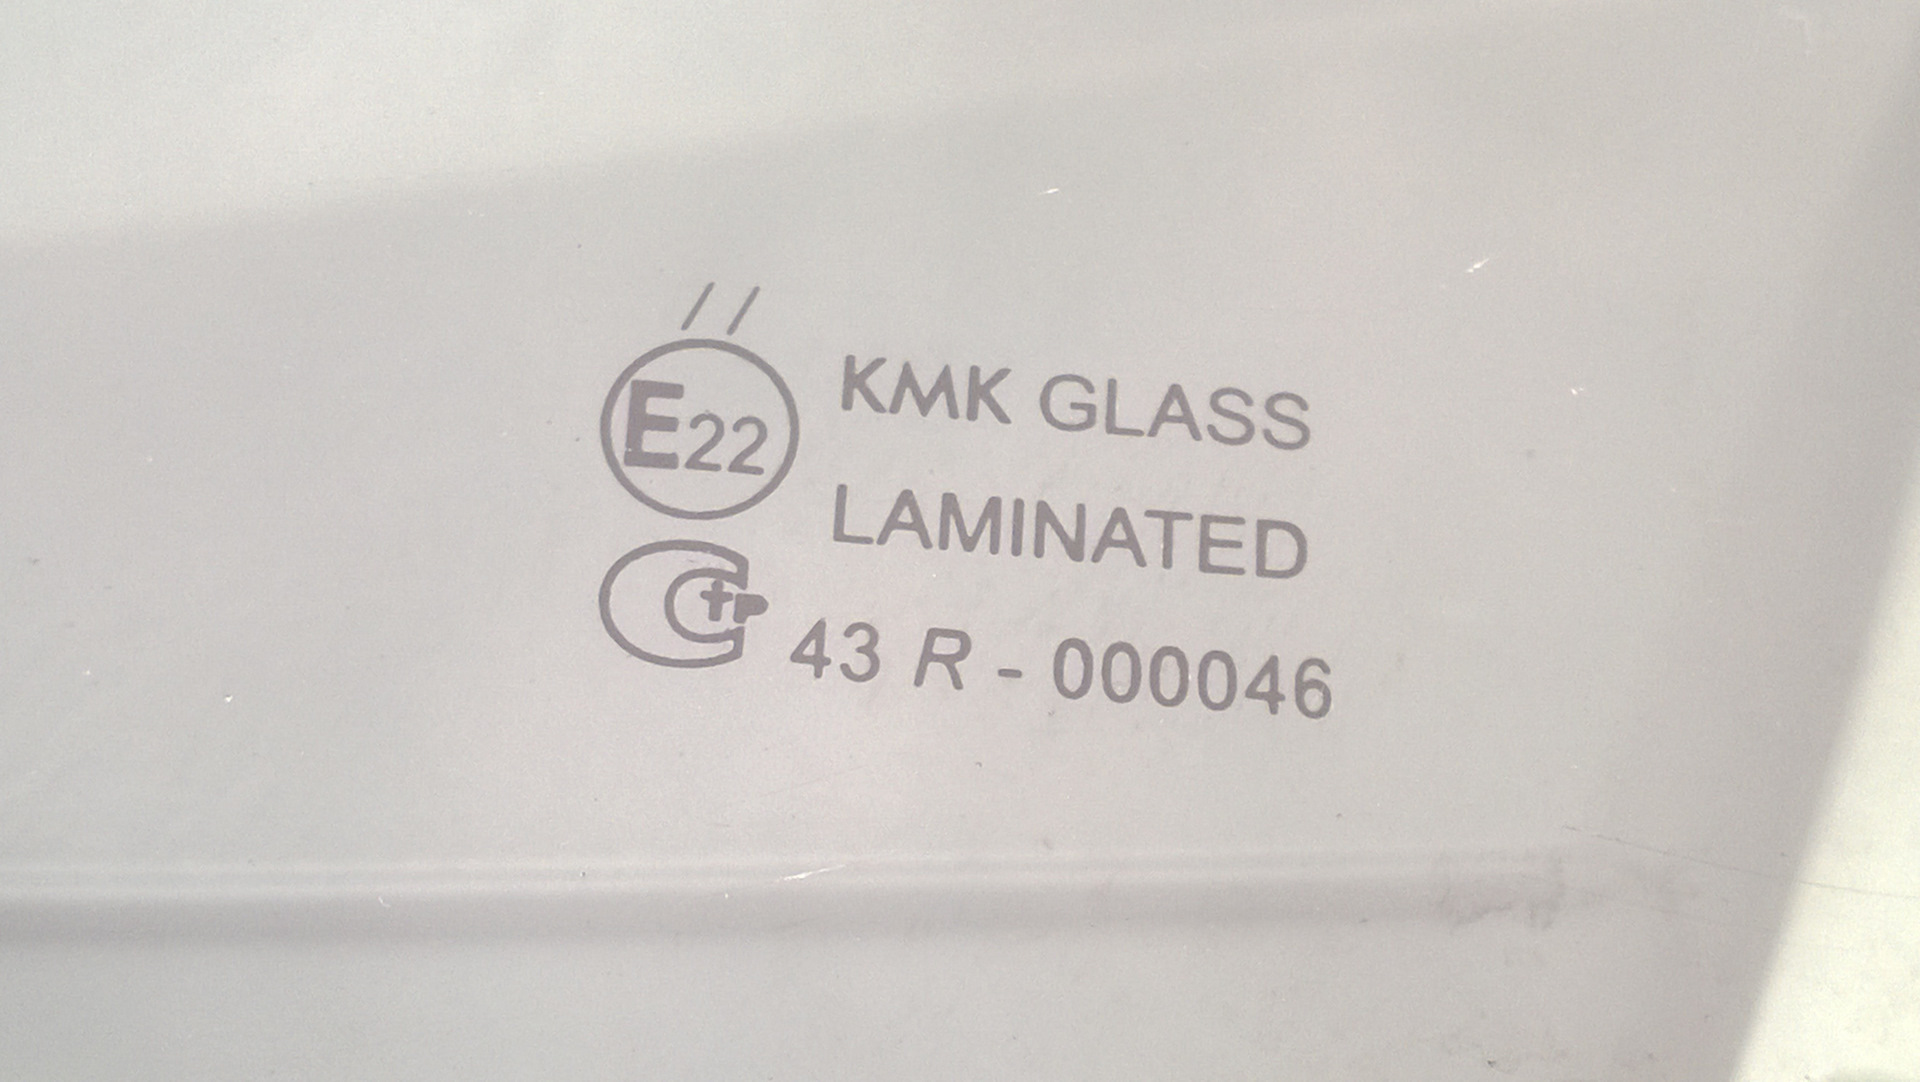 Стекло кмк производитель. КМК стекла. Расшифровка стекол KMK. KMK стекла расшифровка. Расшифровка стекол KMK Glass.